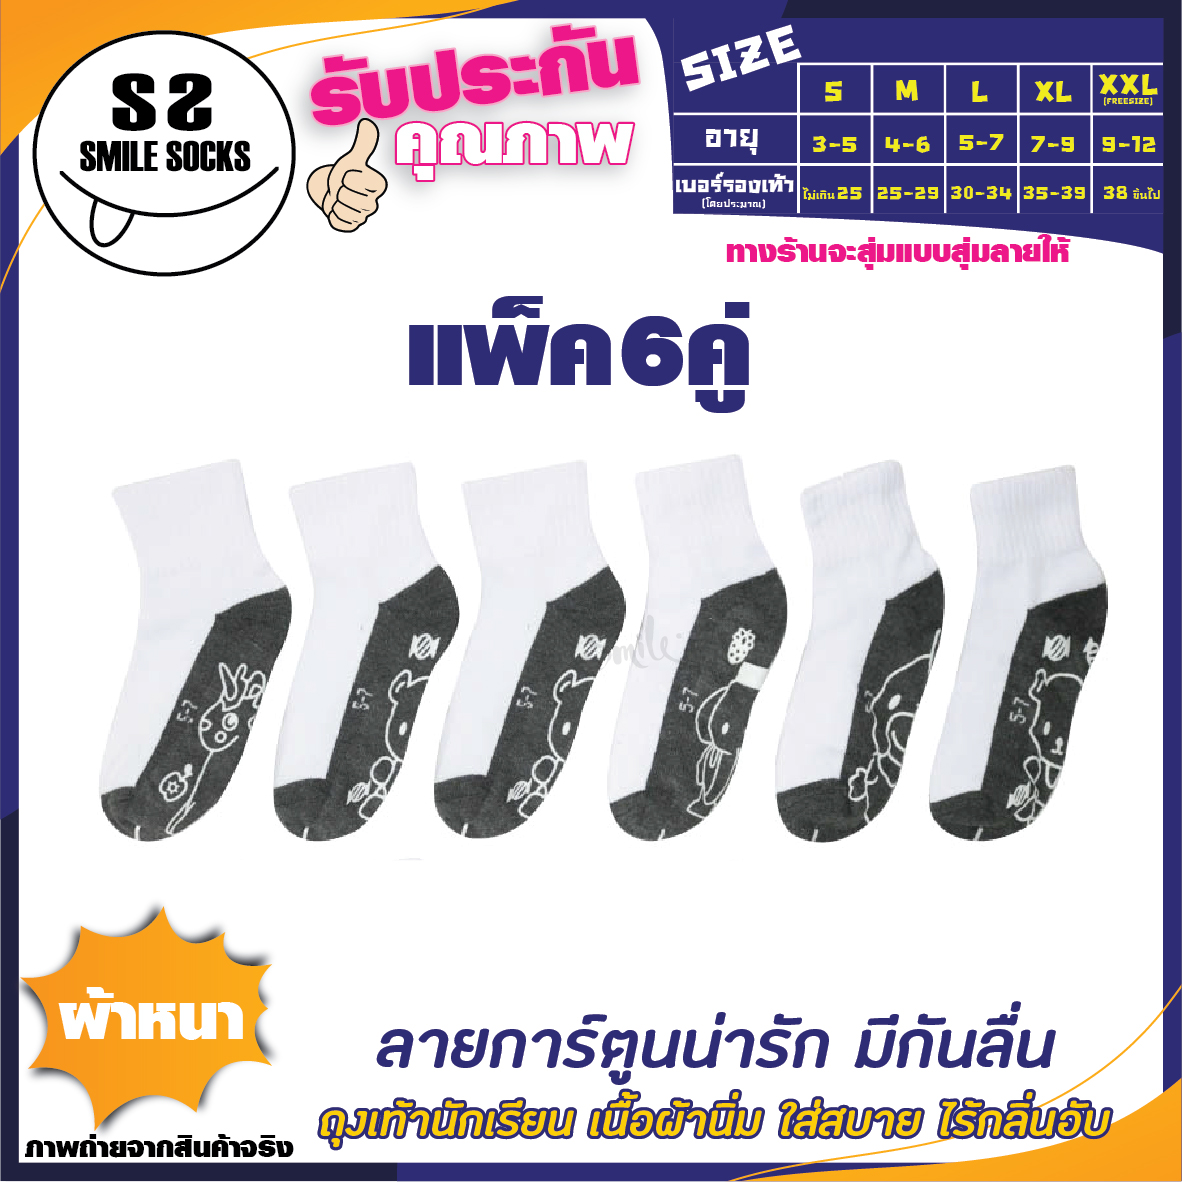 ?ถุงเท้านักเรียนข้อสั้น (Thai student socks) สีขาวพื้นเทา พื้นมีกันลื่นมีลายการ์ตูนน่ารัก ??ยางกันลื่นอย่างดี เนื้อผ้าหนา (แพ็ค 6คู่ /12คู่)